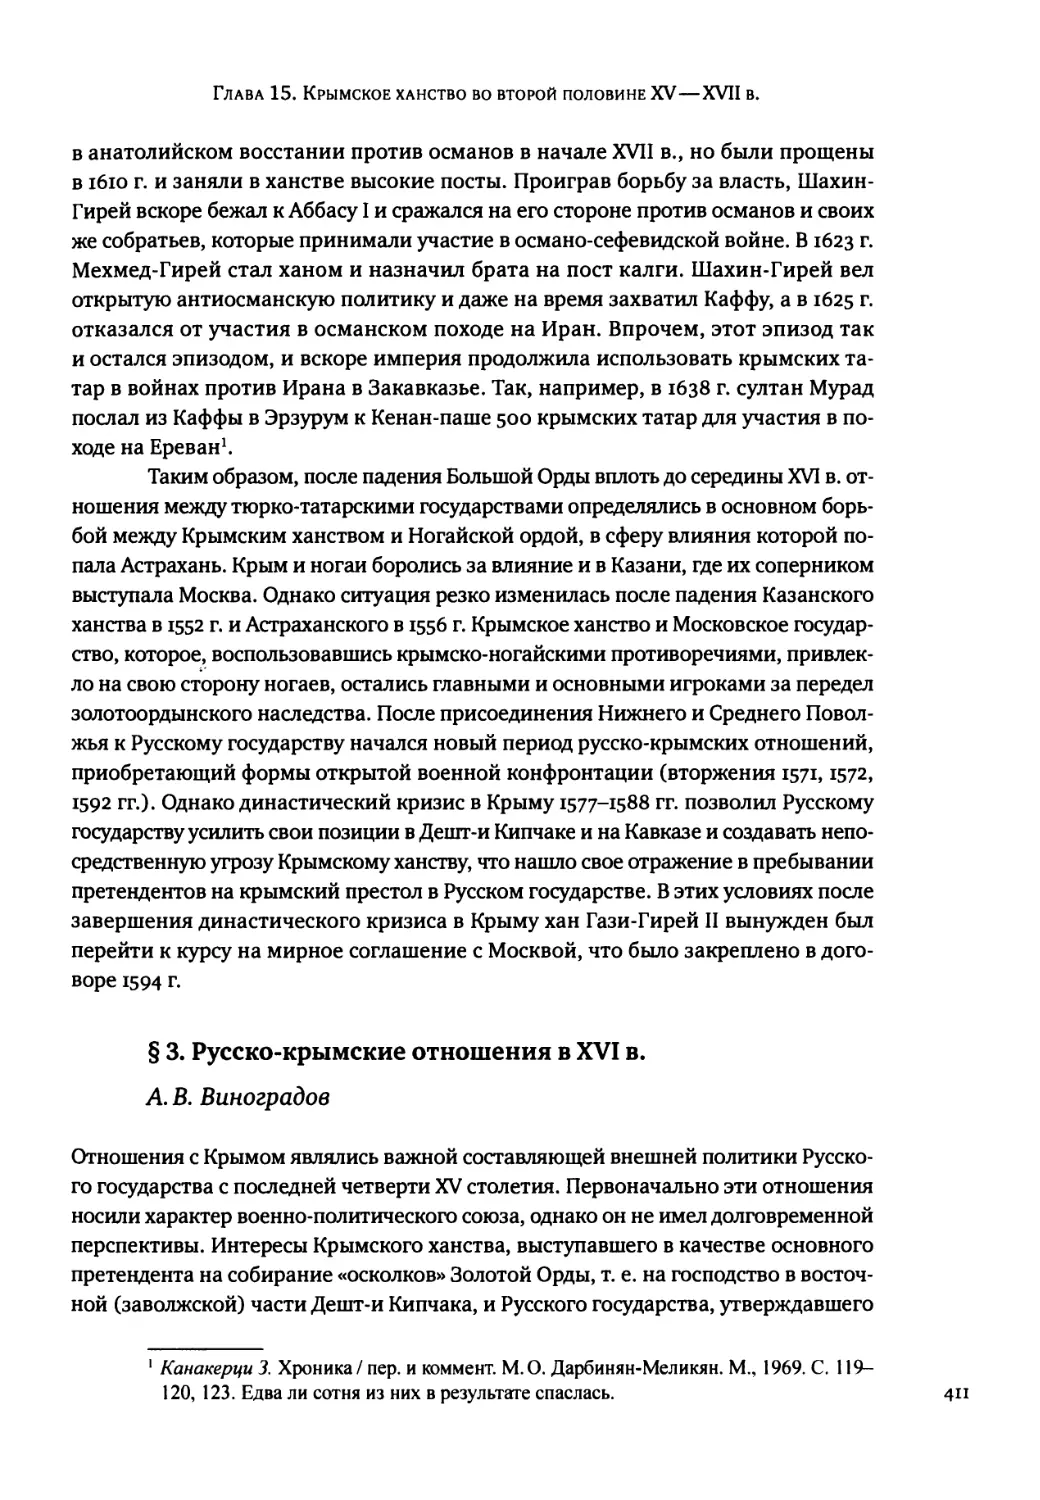 § 3. Русско-крымские отношения в XVI в